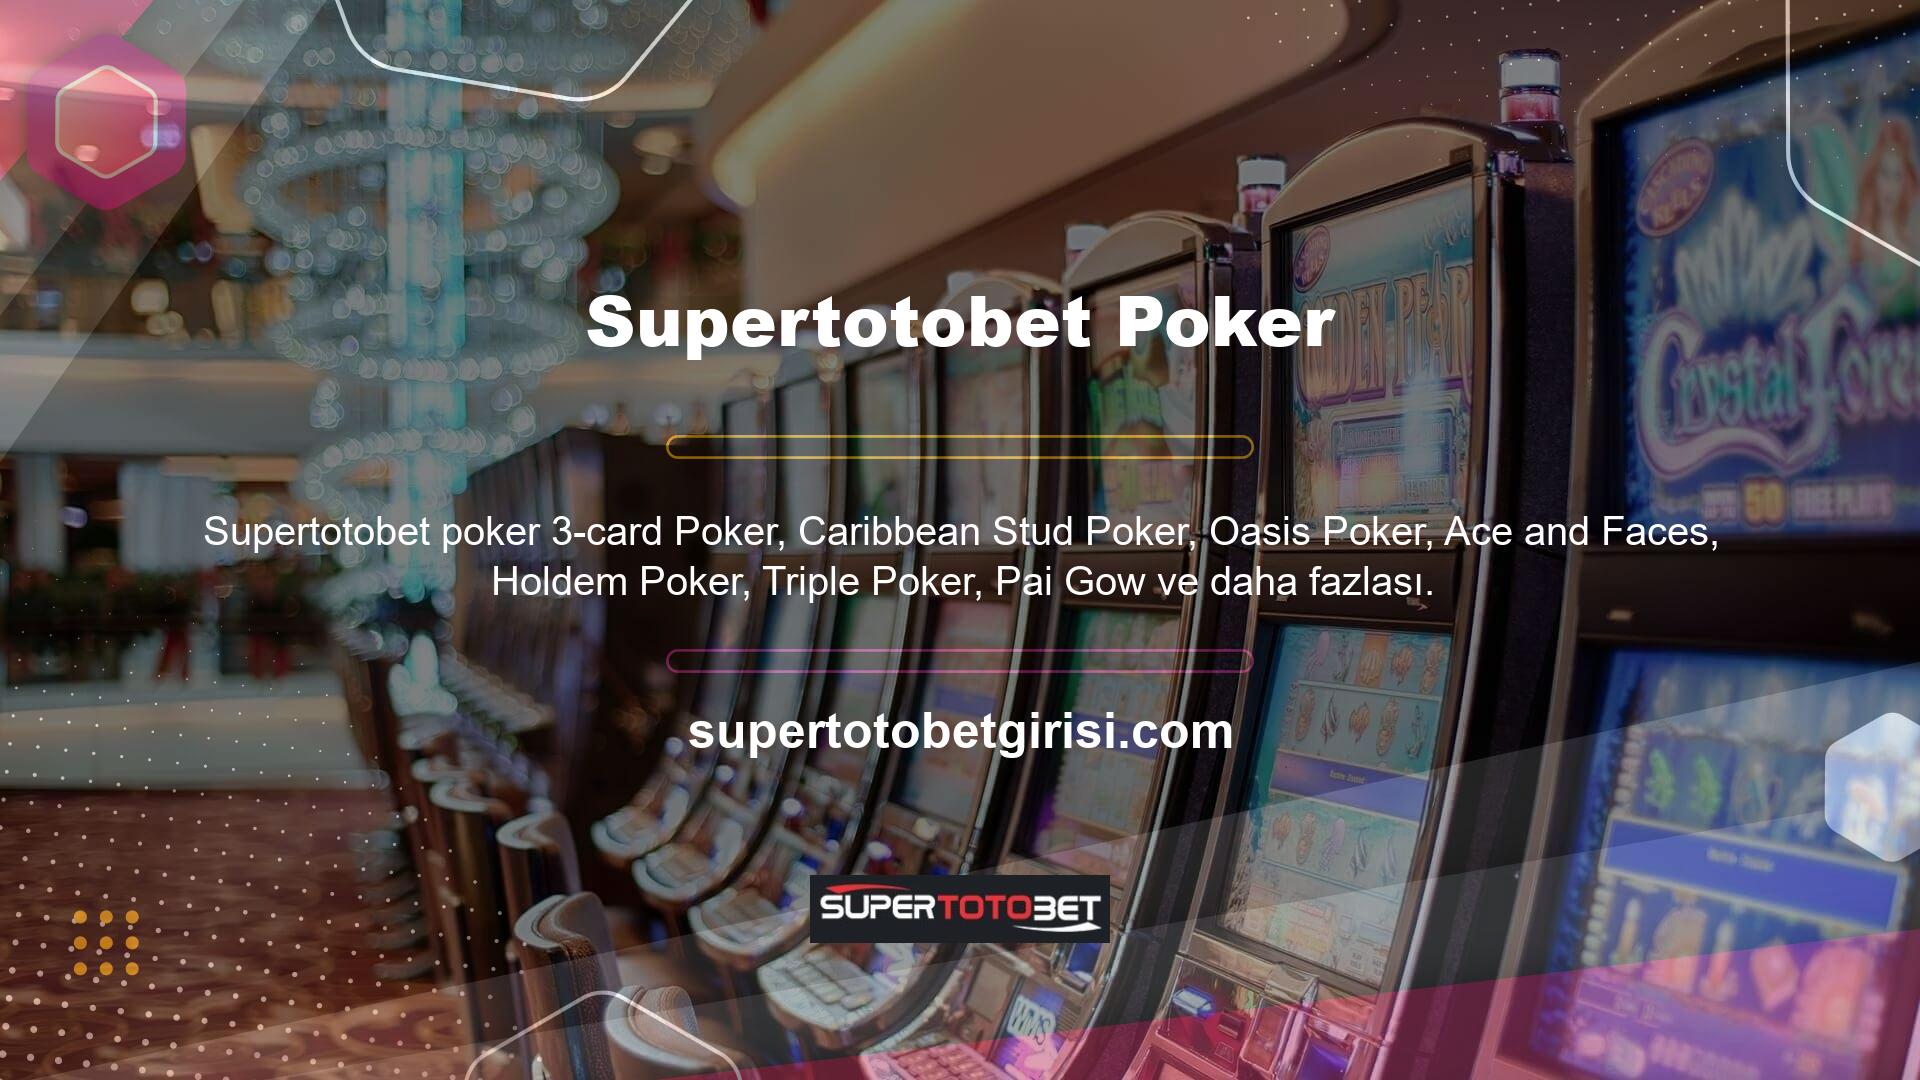 Bu bağlamda Supertotobet farklı oyun tarzları sunmakta ve üyelerle poker oynamanın eğlencesini sunmaktadır